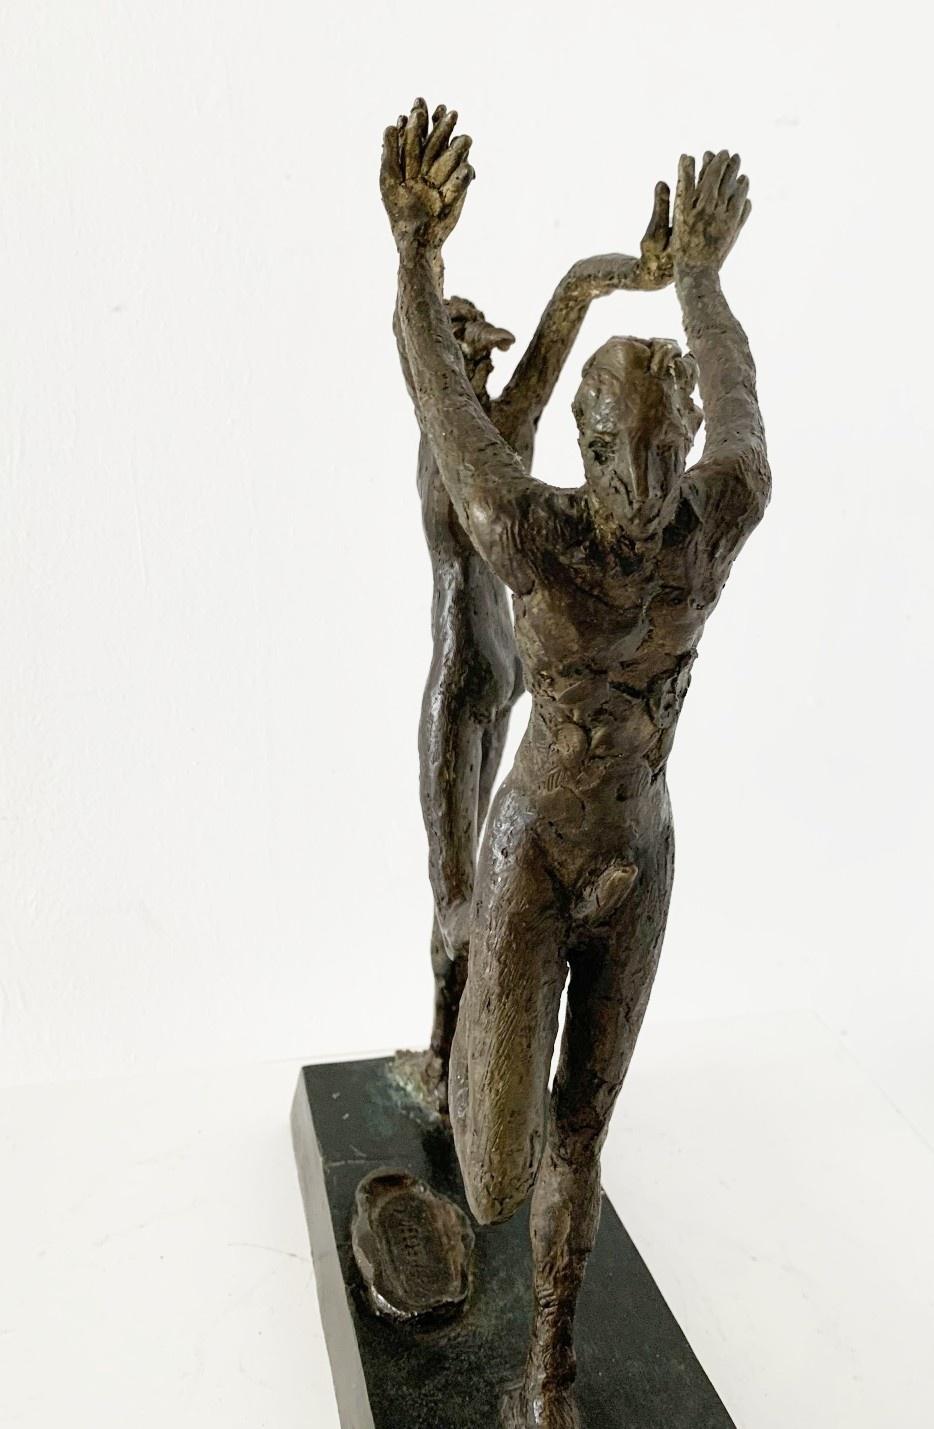 Sculpture figurative contemporaine en bronze représentant un couple dansant ensemble, réalisée par l'artiste italien, le professeur Giuseppe del Debbio. La sculpture est signée sur la base. Le couple est composé d'un homme et d'une femme qui se